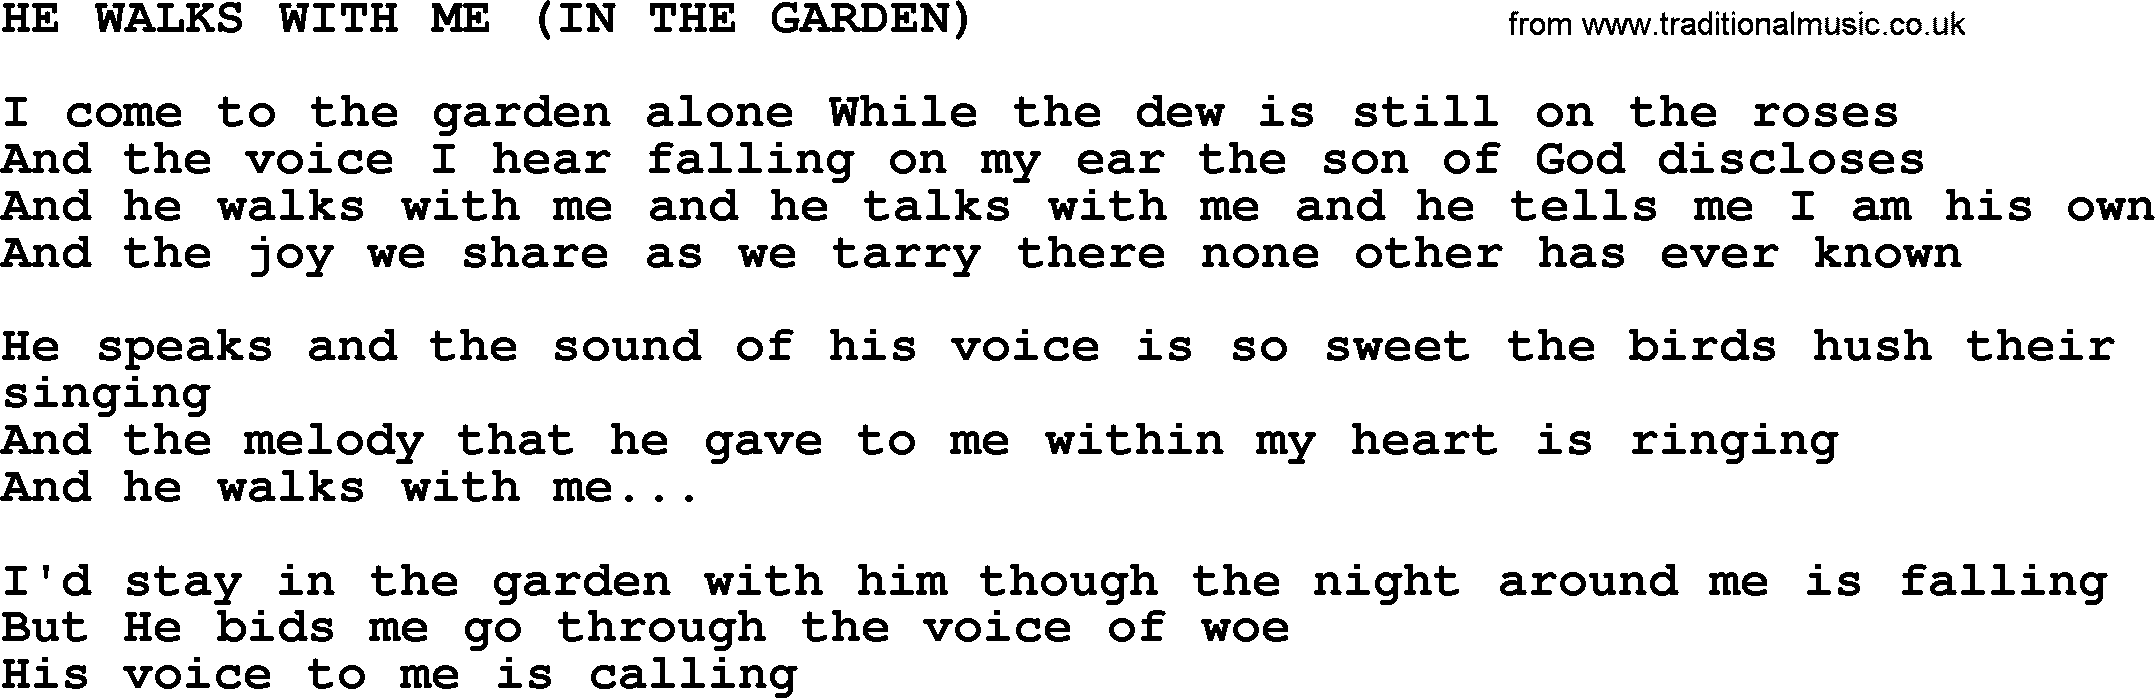 Merle Haggard song: He Walks With Me In The Garden, lyrics.